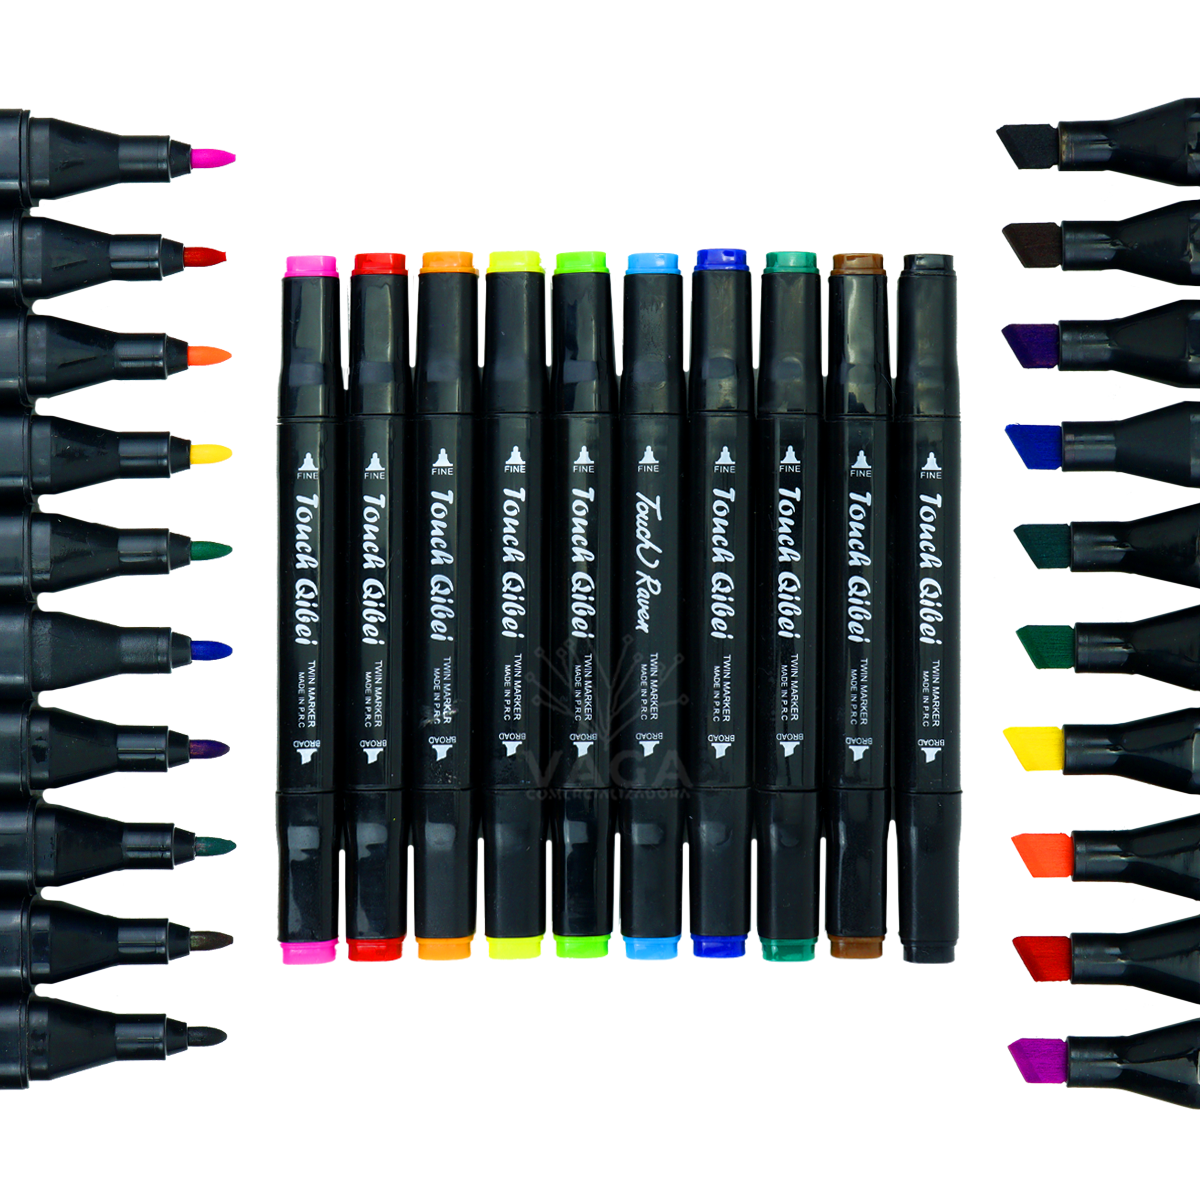 Set Arte Colores Crayones Plumones Acuarelas Estuche 220 Pzs